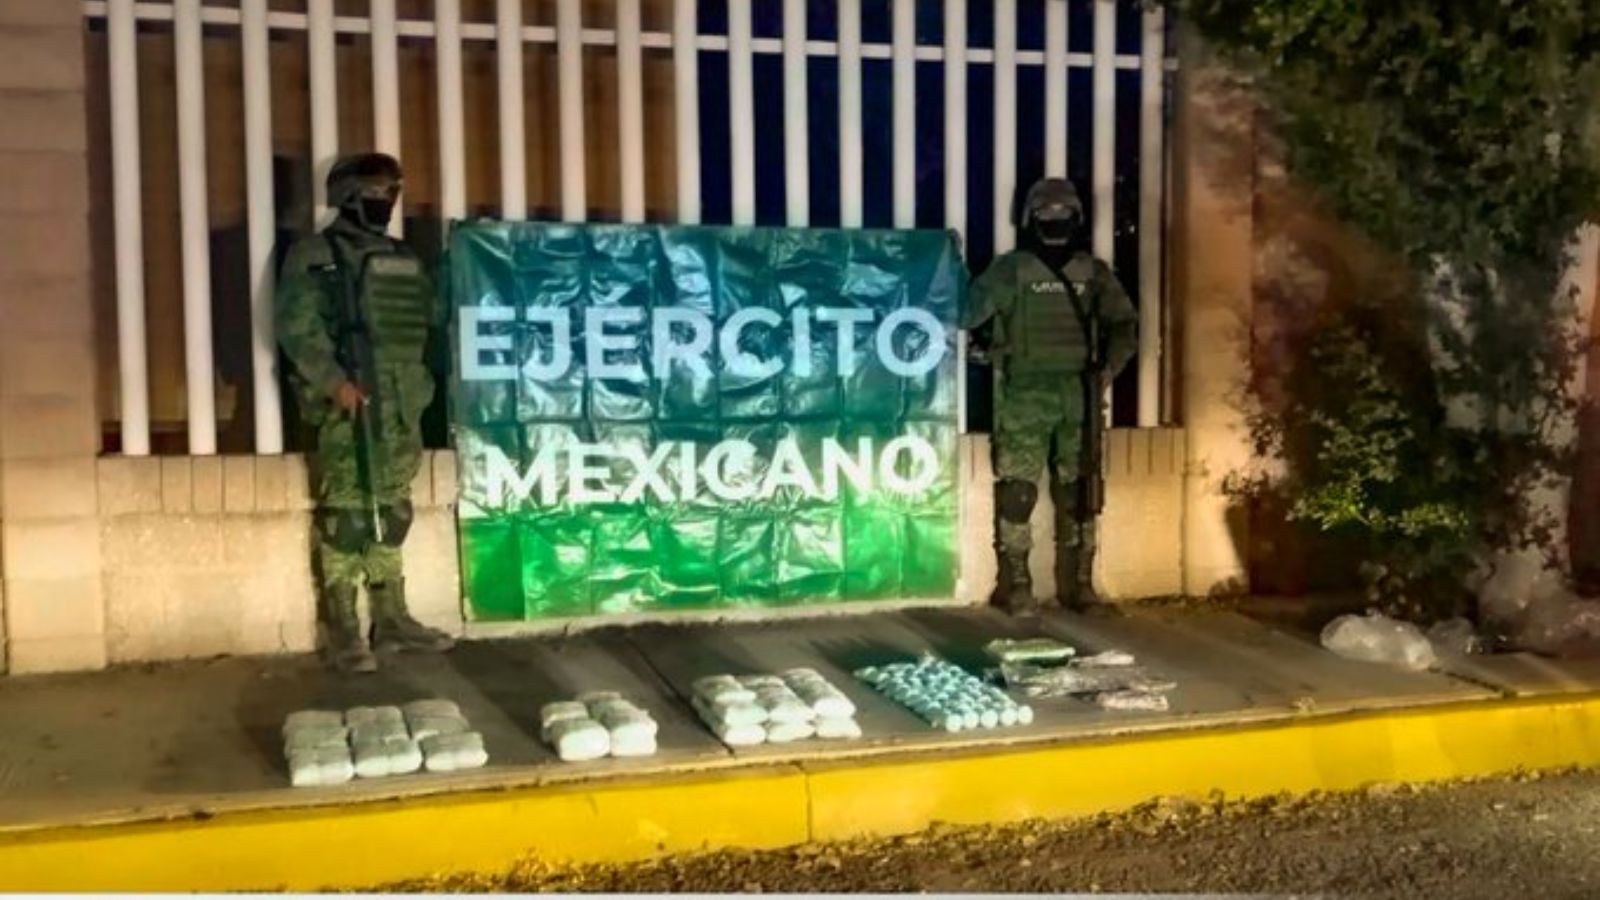 Sedena Ejército Mexicano y Guardia Nacional decomisan fentanilo y otras drogas en Sinaloa